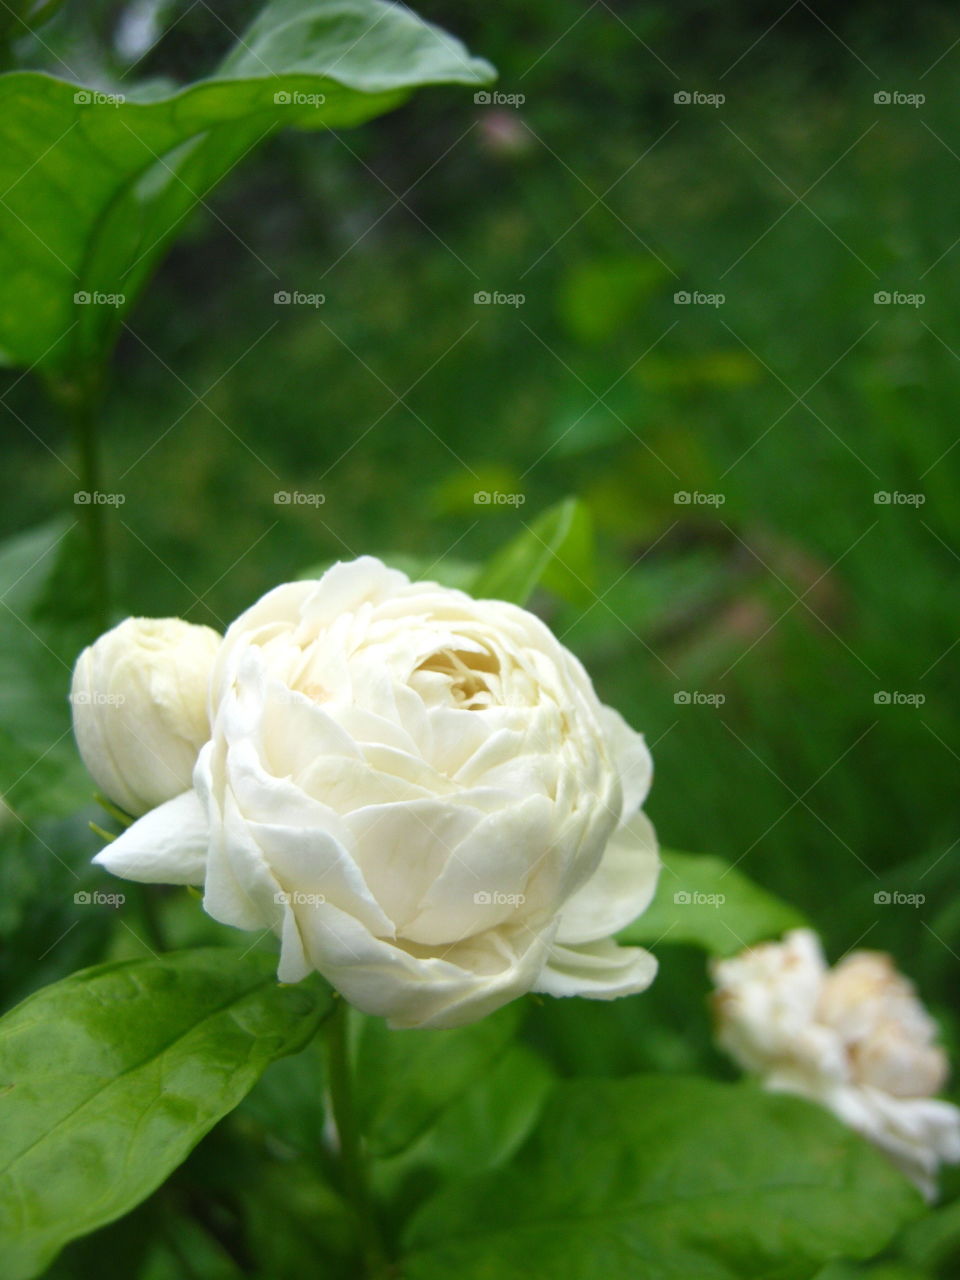 jasmine flowers in the garden